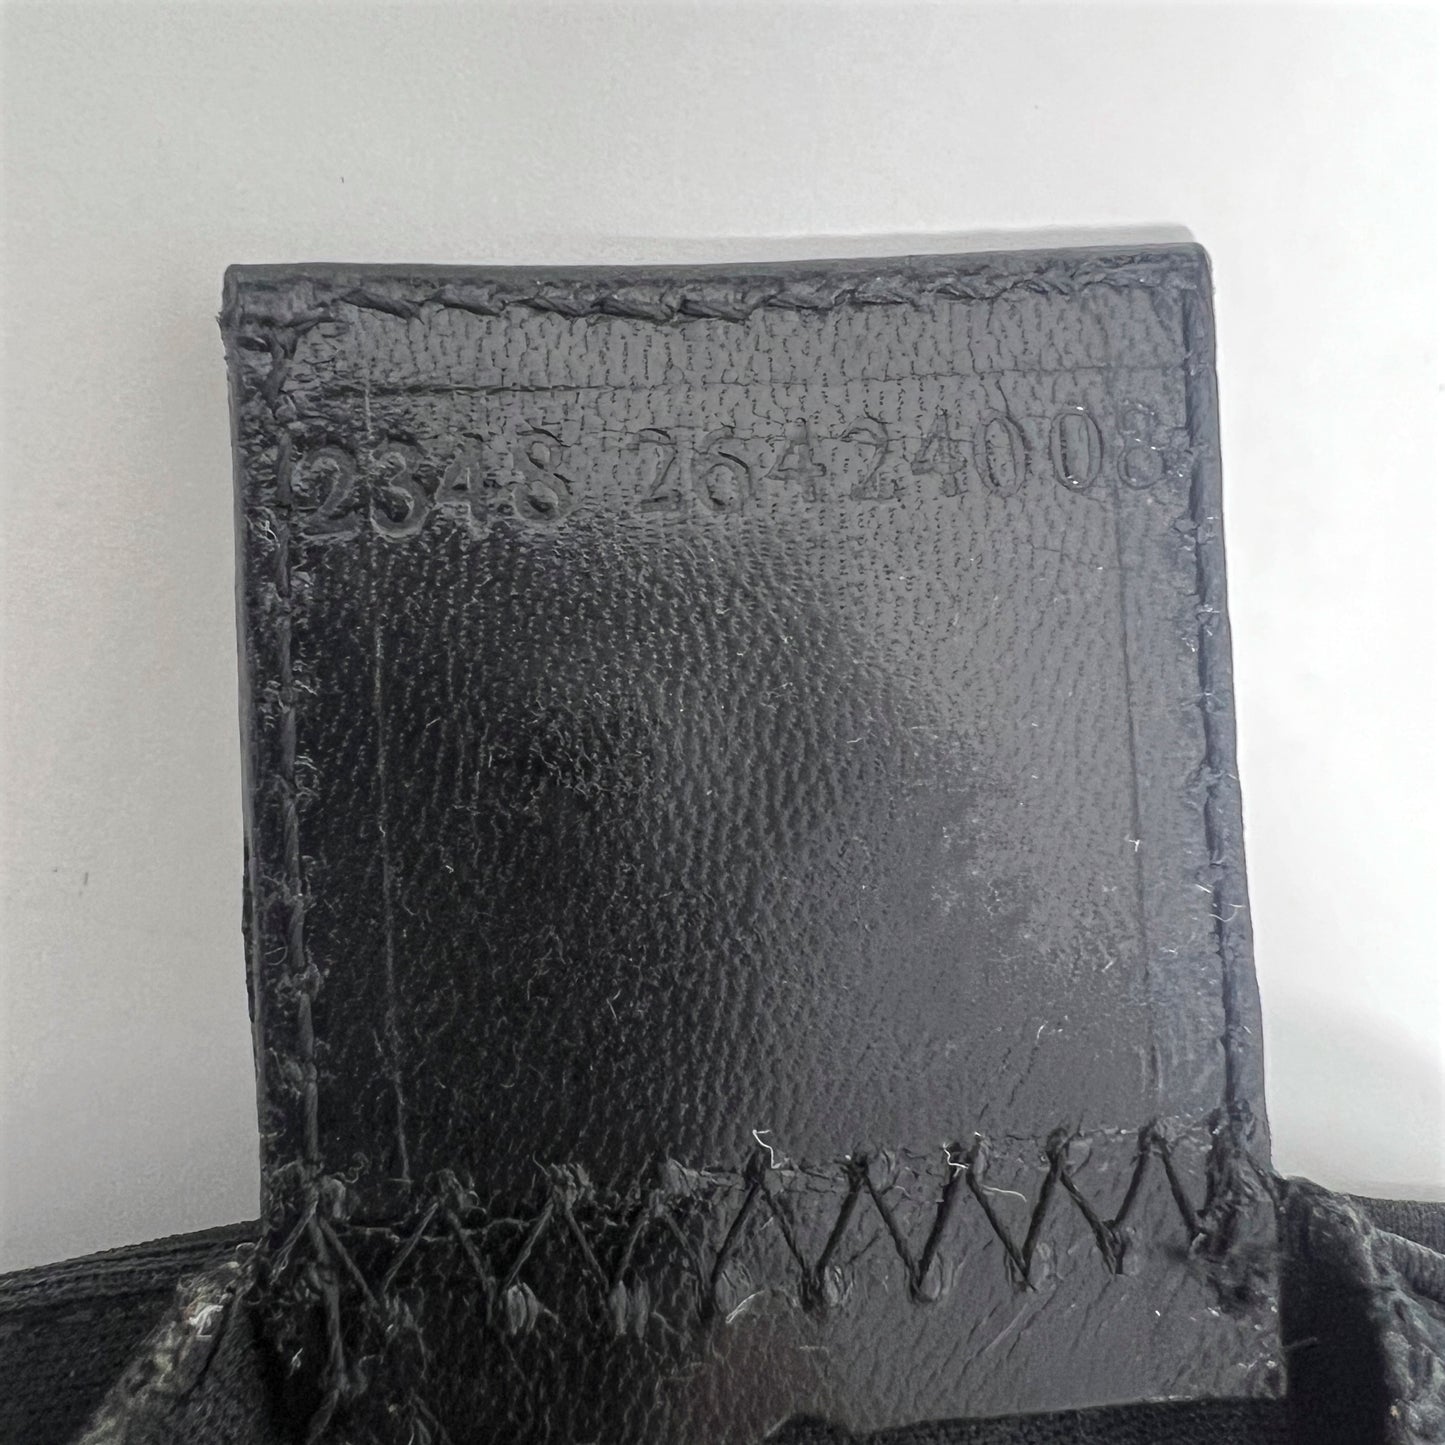 Fendi Black Neoprene Logo Buckle Leather Trim Baguette Flap Shoulder Bag